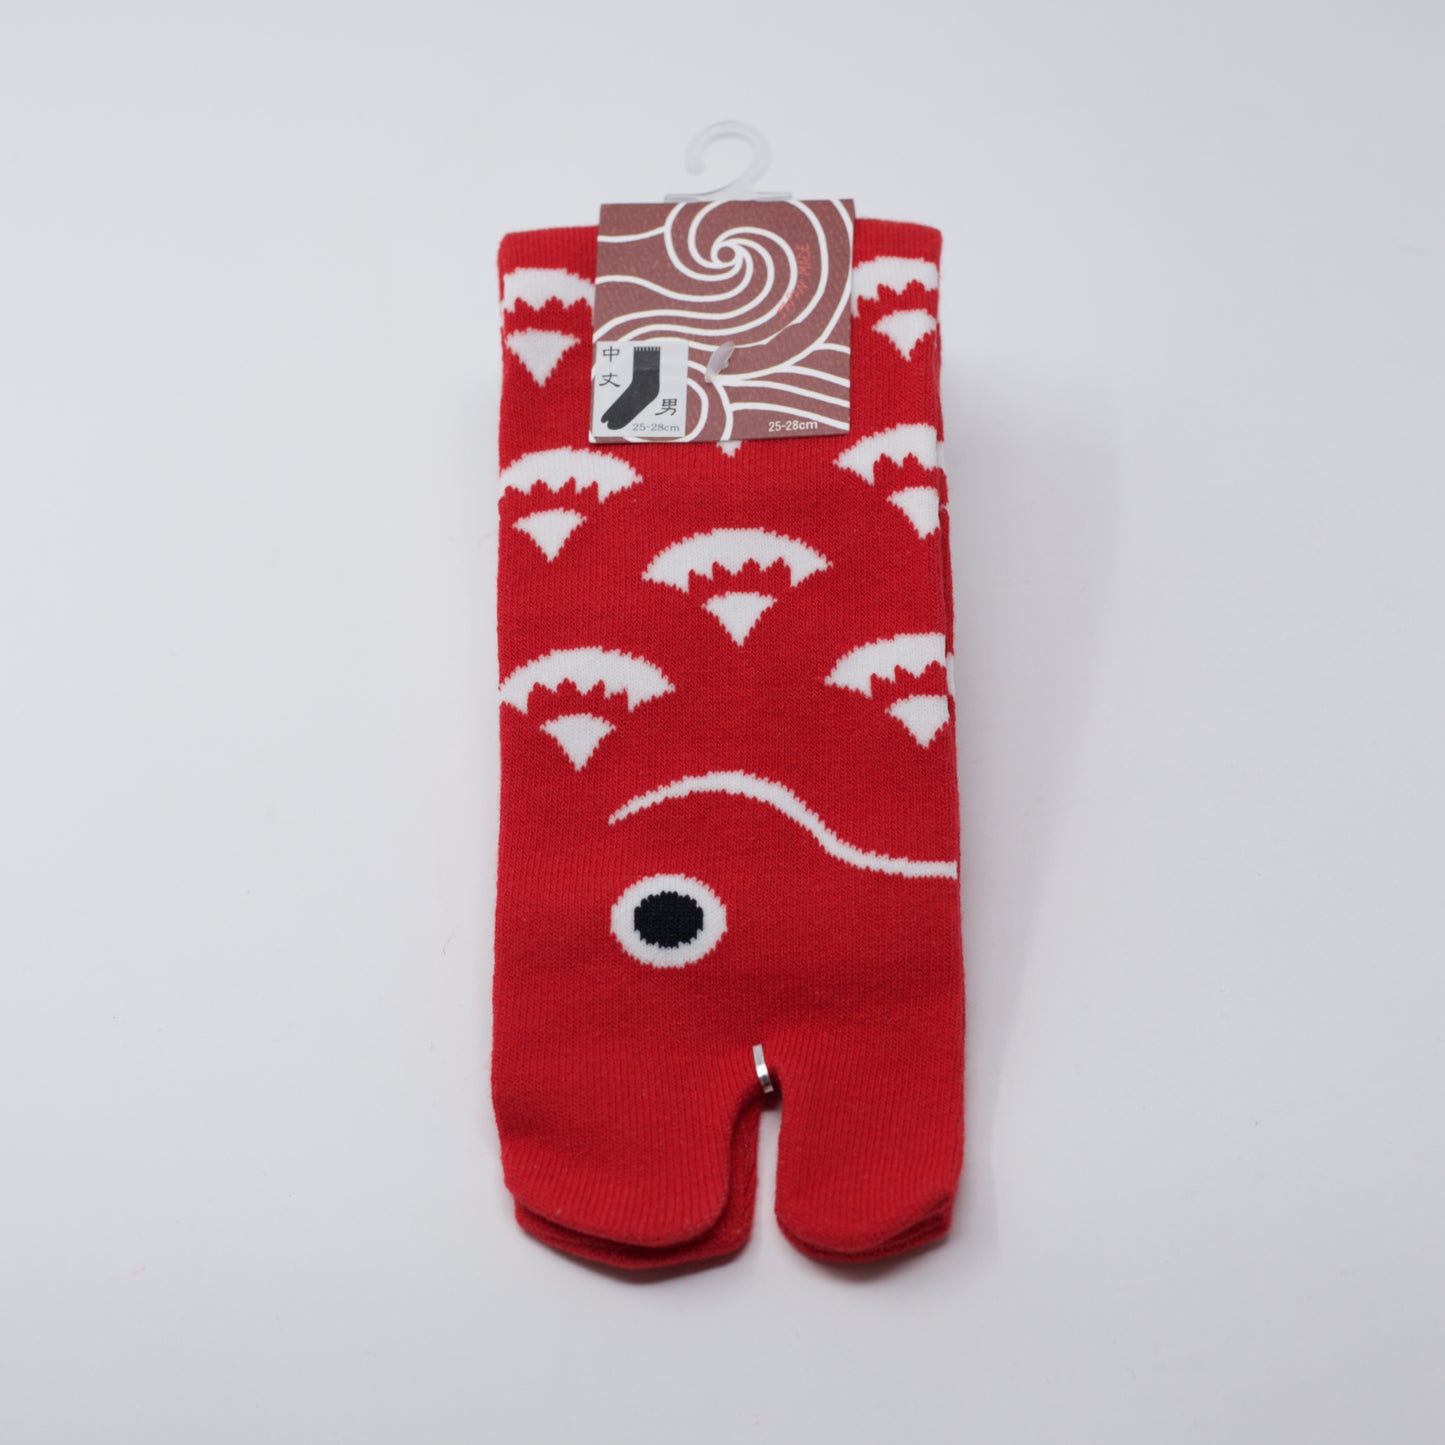 Tai Fish Tabi Socks